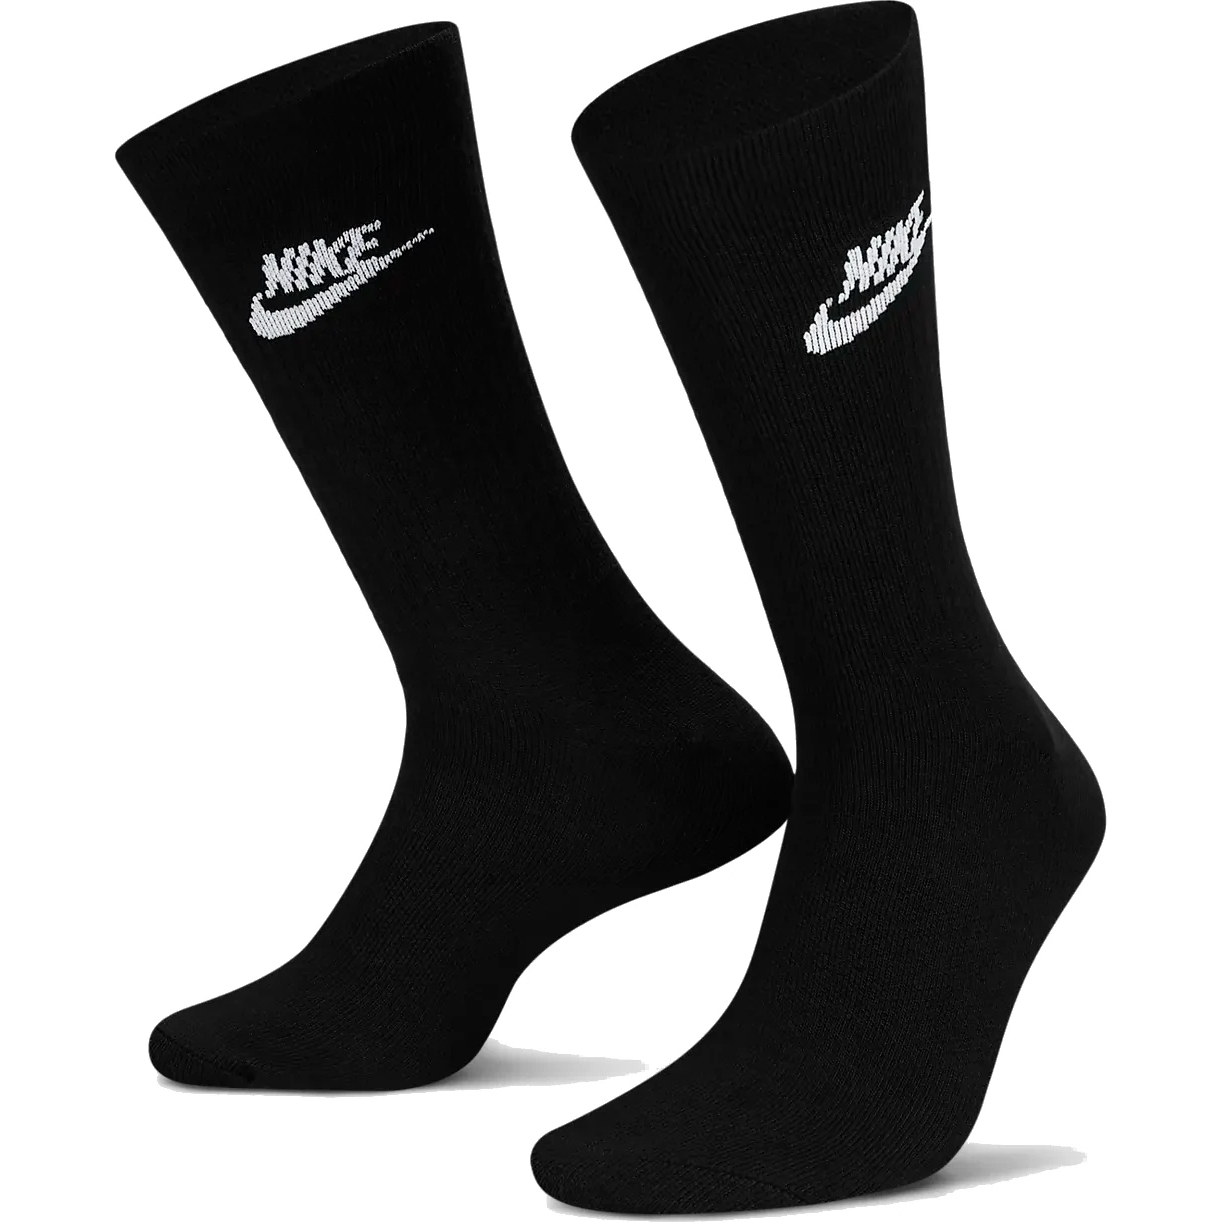 Bild von Nike Sportswear Everyday Essential Crew Socken (3 Paar) - schwarz/weiß DX5025-010